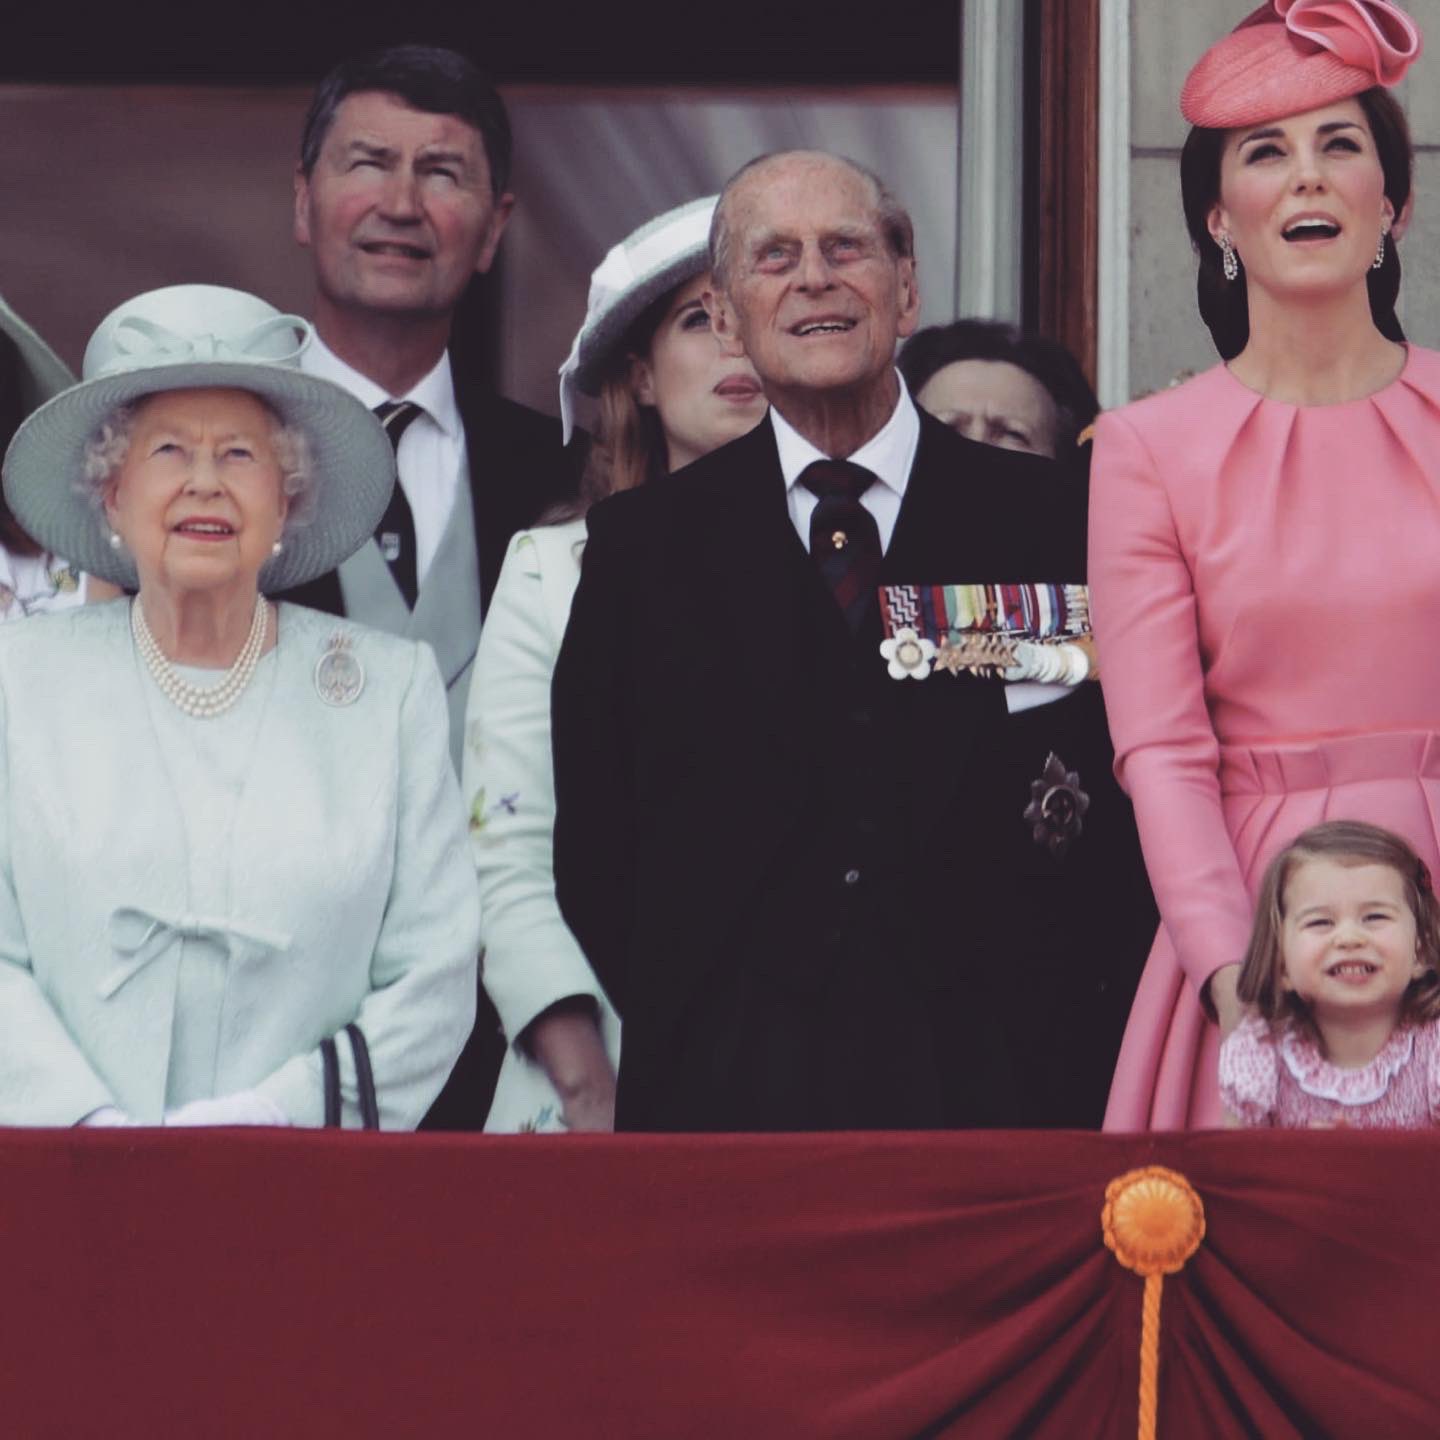 العائلة الملكية البريطانية تهنئ الأميرة شارلوت بعيد ميلادها الـ 5  (4)